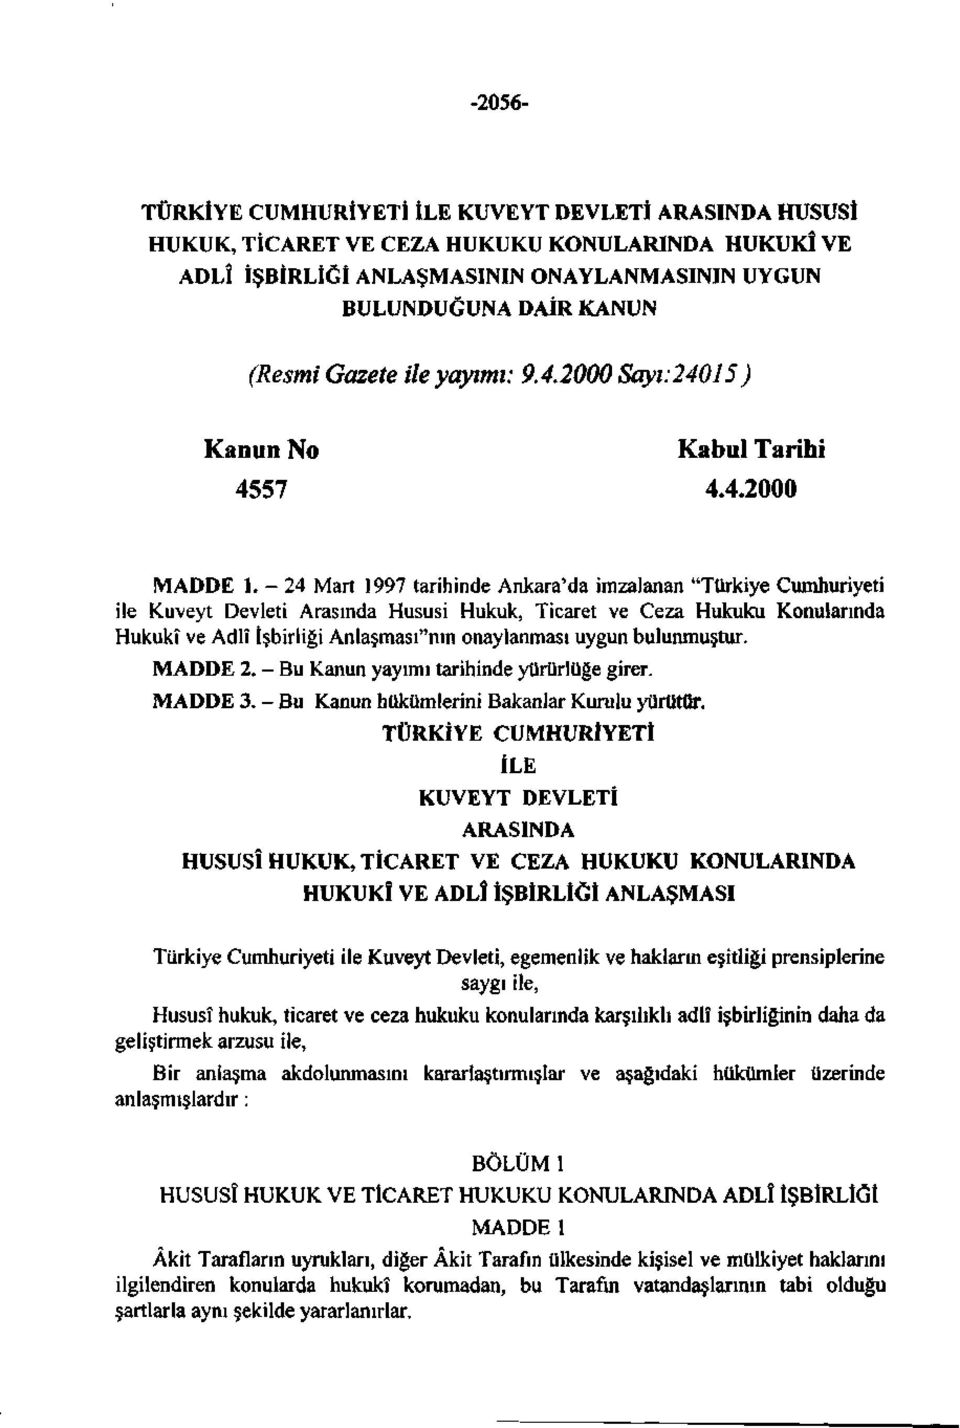 - 24 Mart 1997 tarihinde Ankara'da imzalanan "Türkiye Cumhuriyeti ile Kuveyt Devleti Arasında Hususi Hukuk, Ticaret ve Ceza Hukuku Konularında Hukukî ve Adlî İşbirliği Anlaşması"nın onaylanması uygun